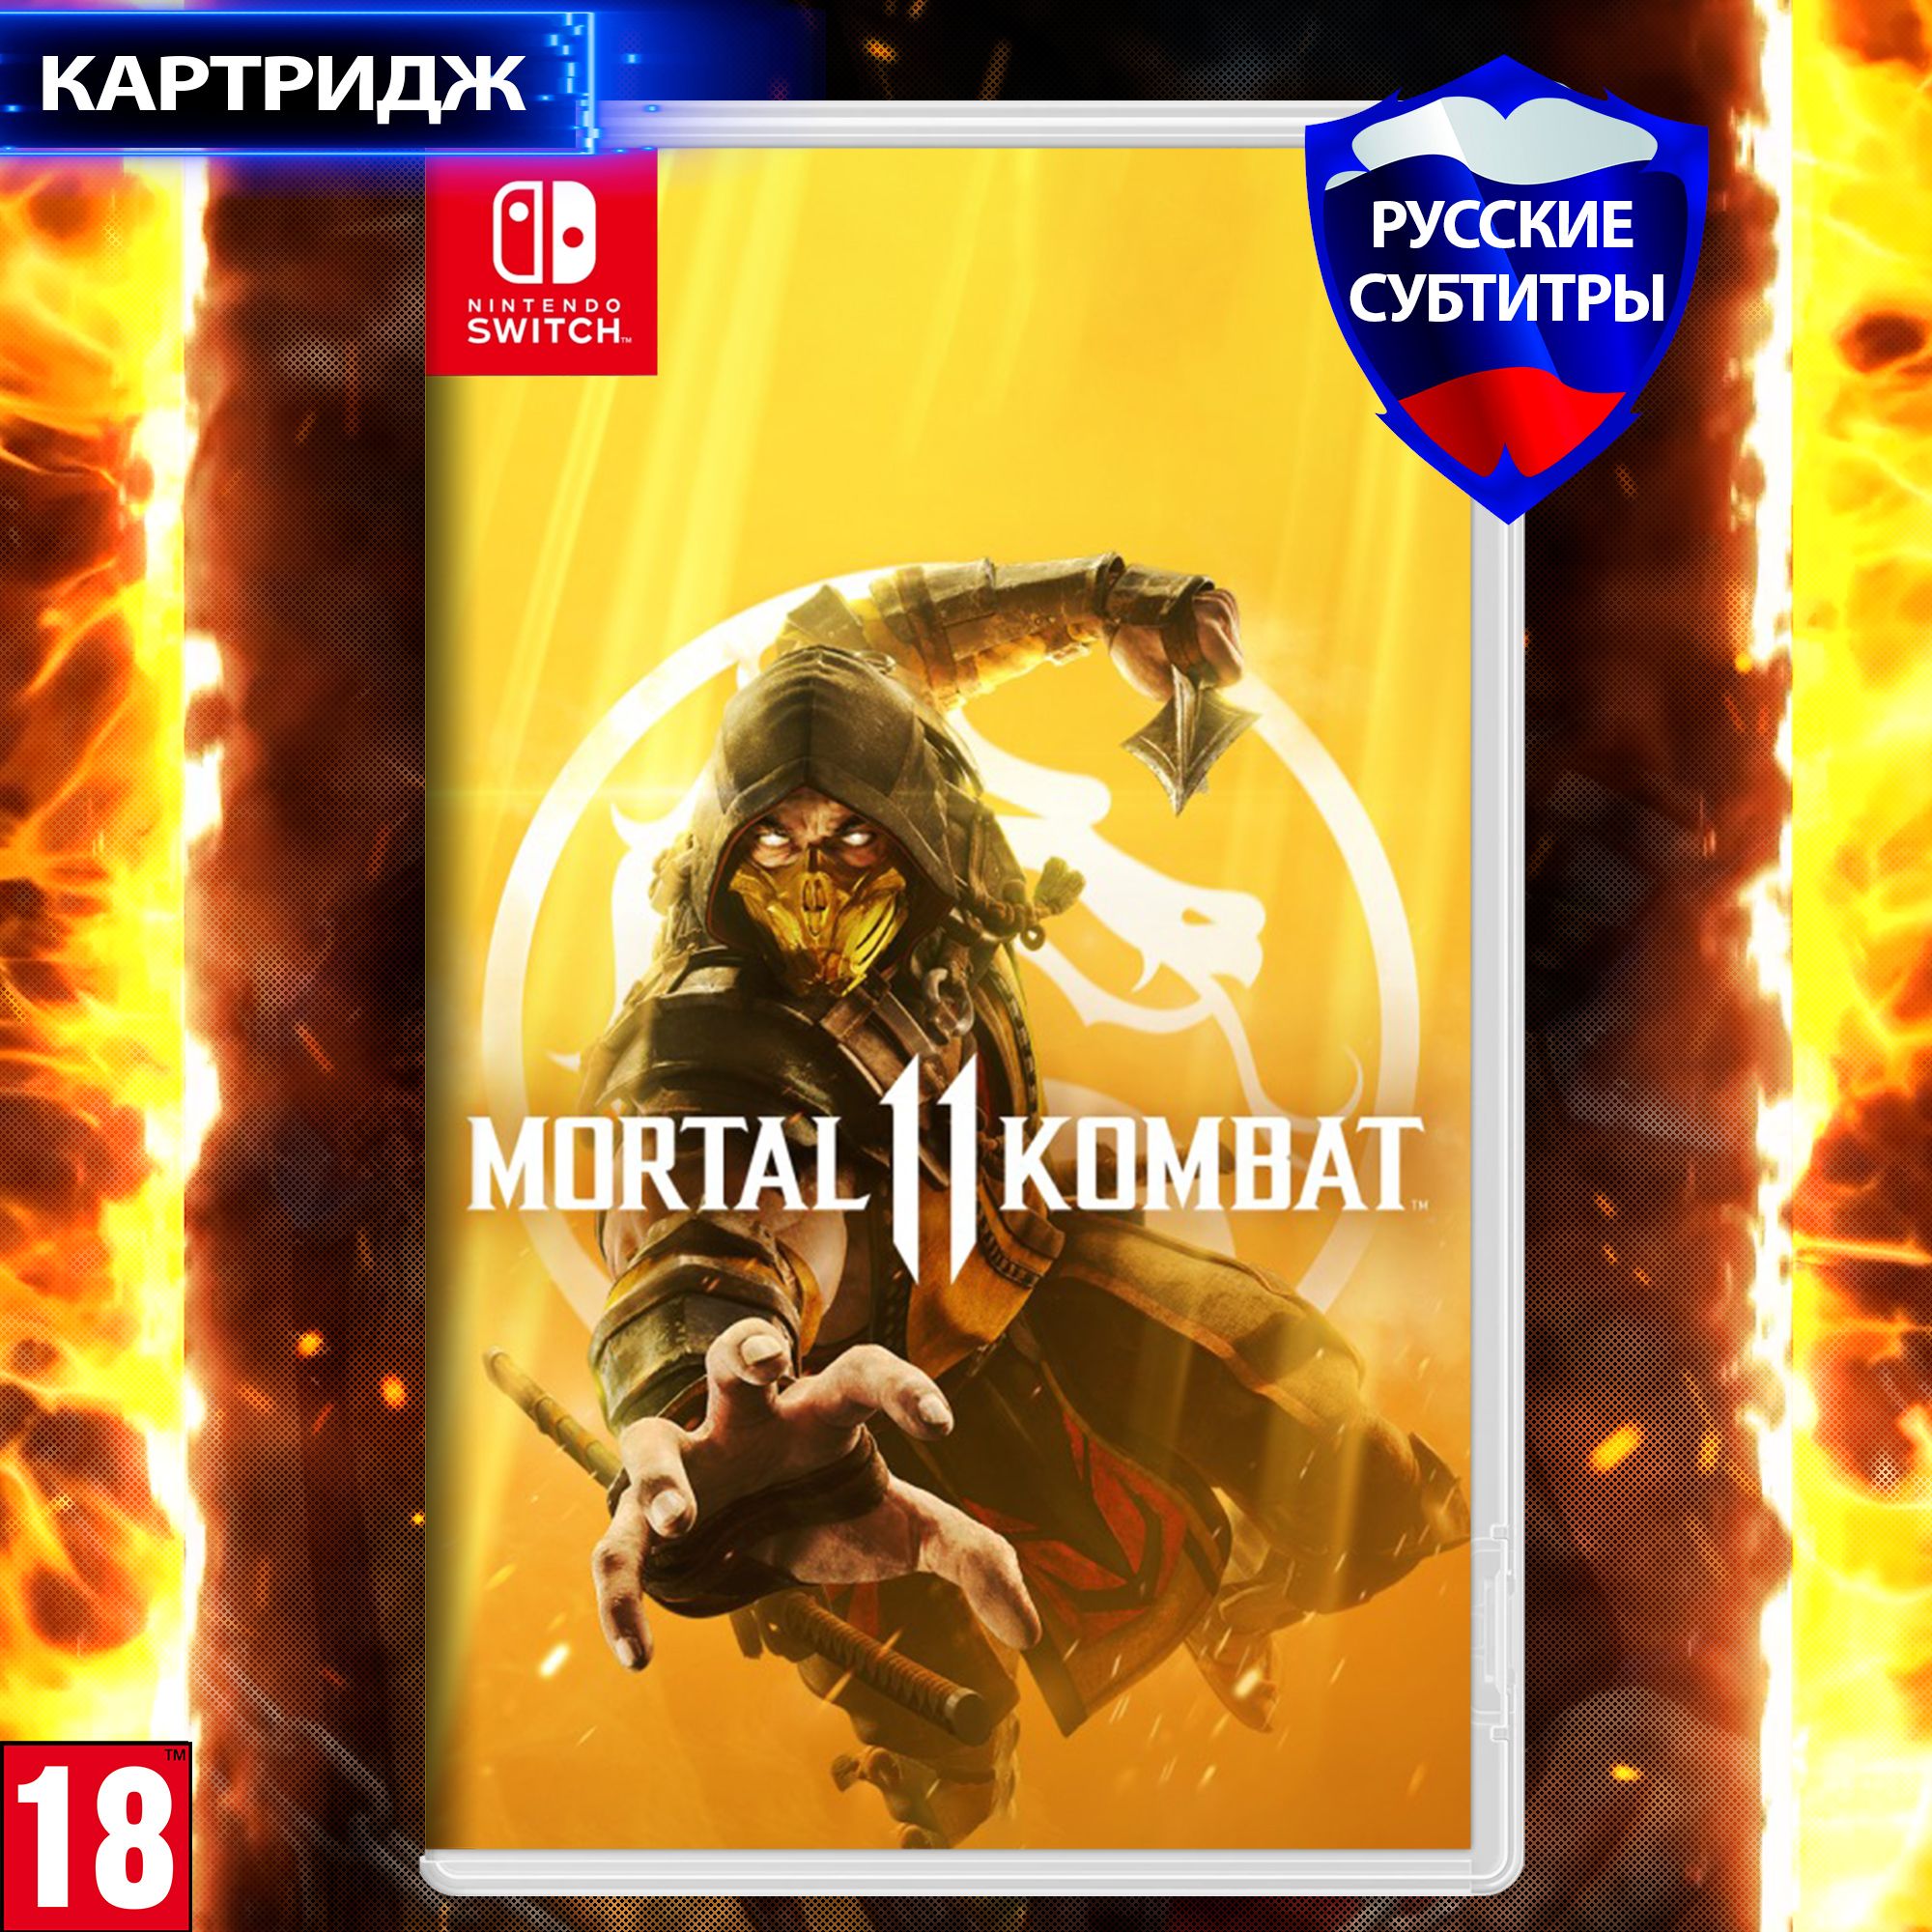 ИграMortalKombat11(II)дляNintendoSwitch,Русскиесубтитры